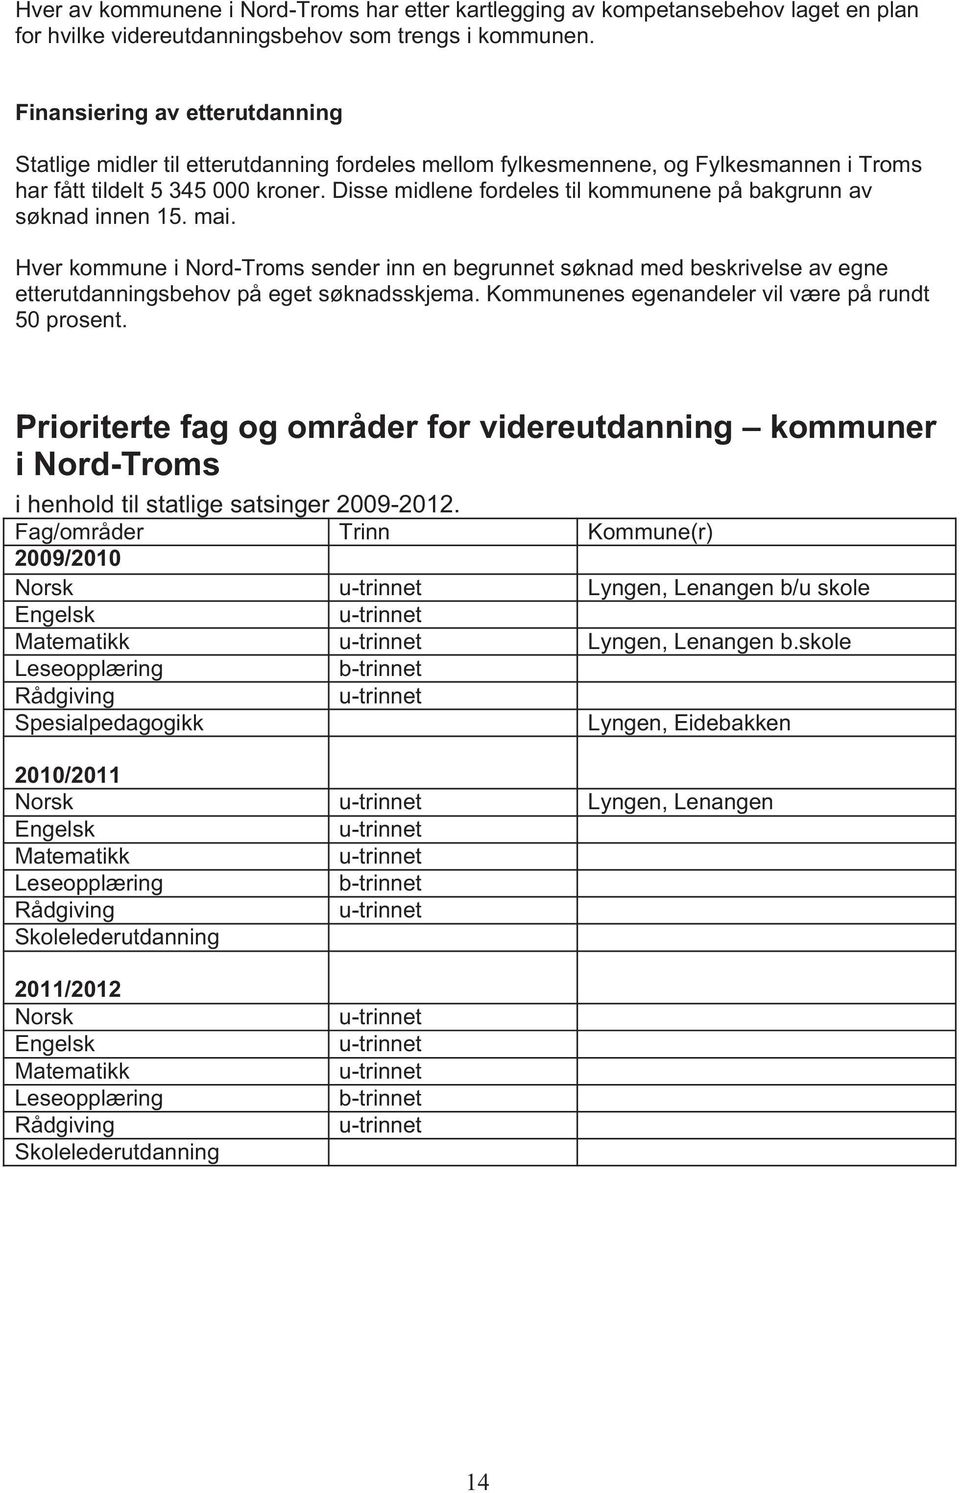 Disse midlene fordeles til kommunene på bakgrunn av søknad innen 15. mai. Hver kommune i Nord-Troms sender inn en begrunnet søknad med beskrivelse av egne etterutdanningsbehov på eget søknadsskjema.